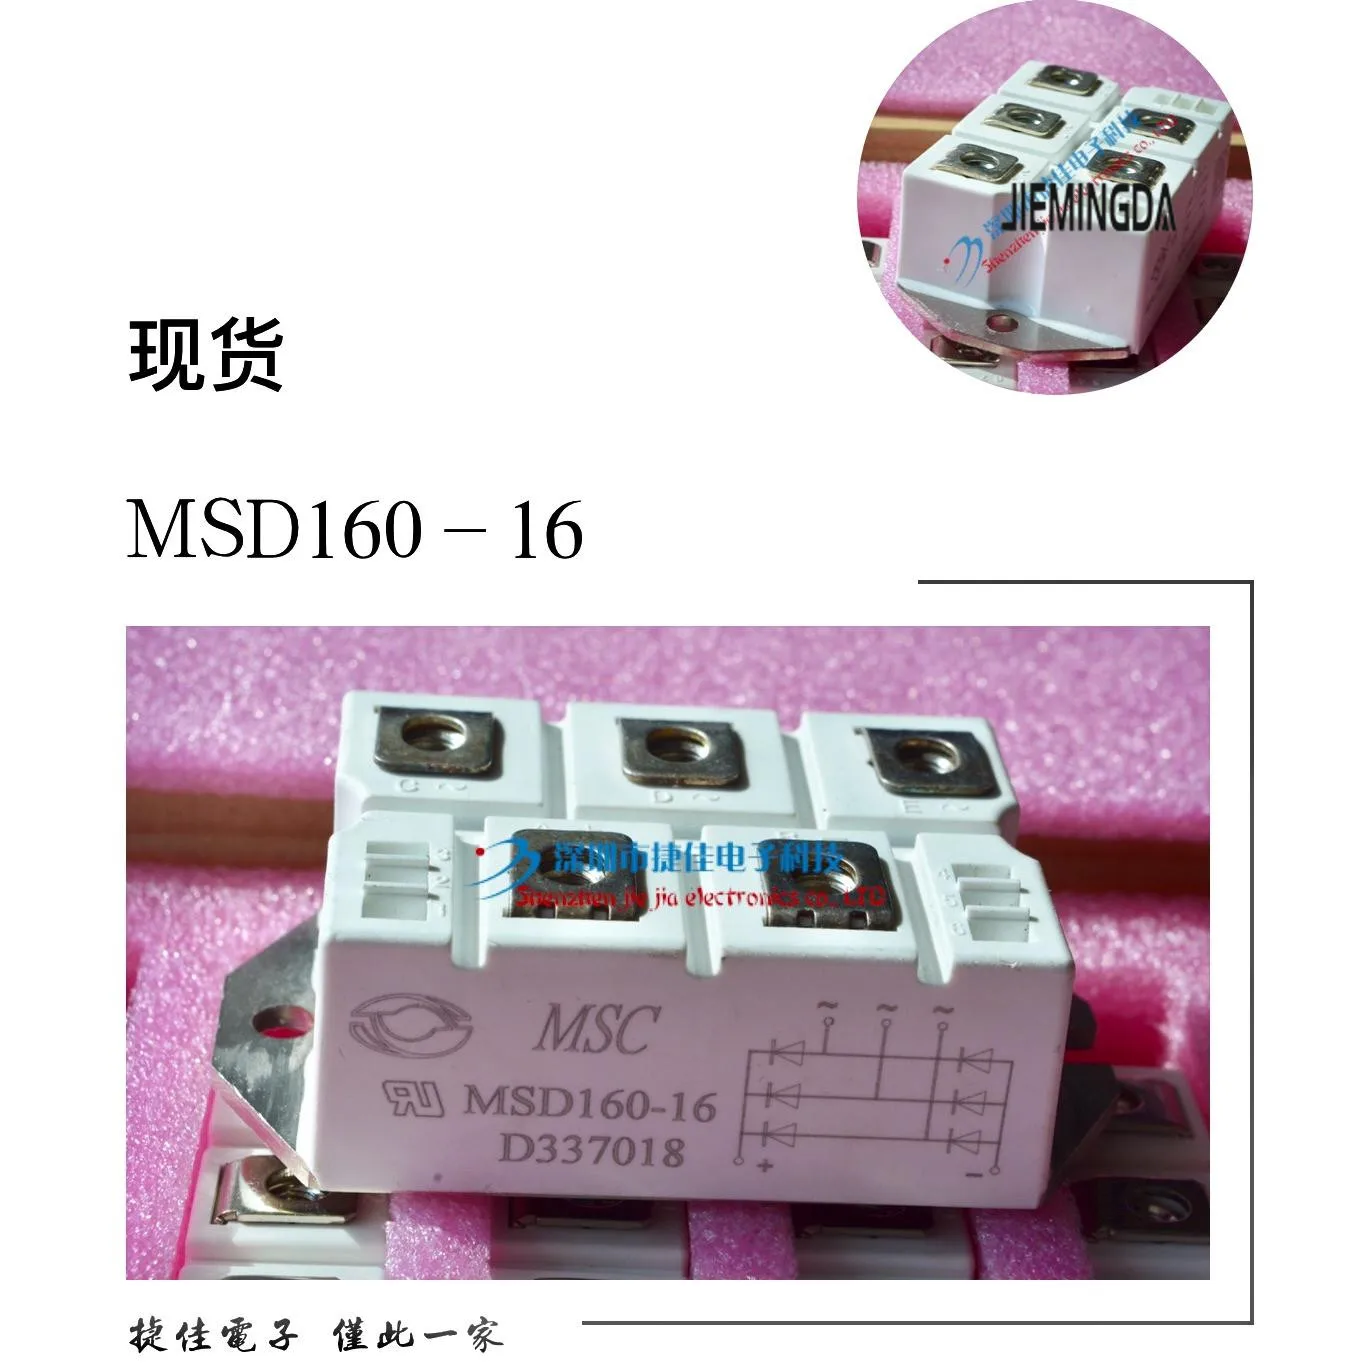 MSD130-16 MSD160-16 MSD100-16 MDS200-16 MMD150F160X 100% nauji ir originalūs - 4